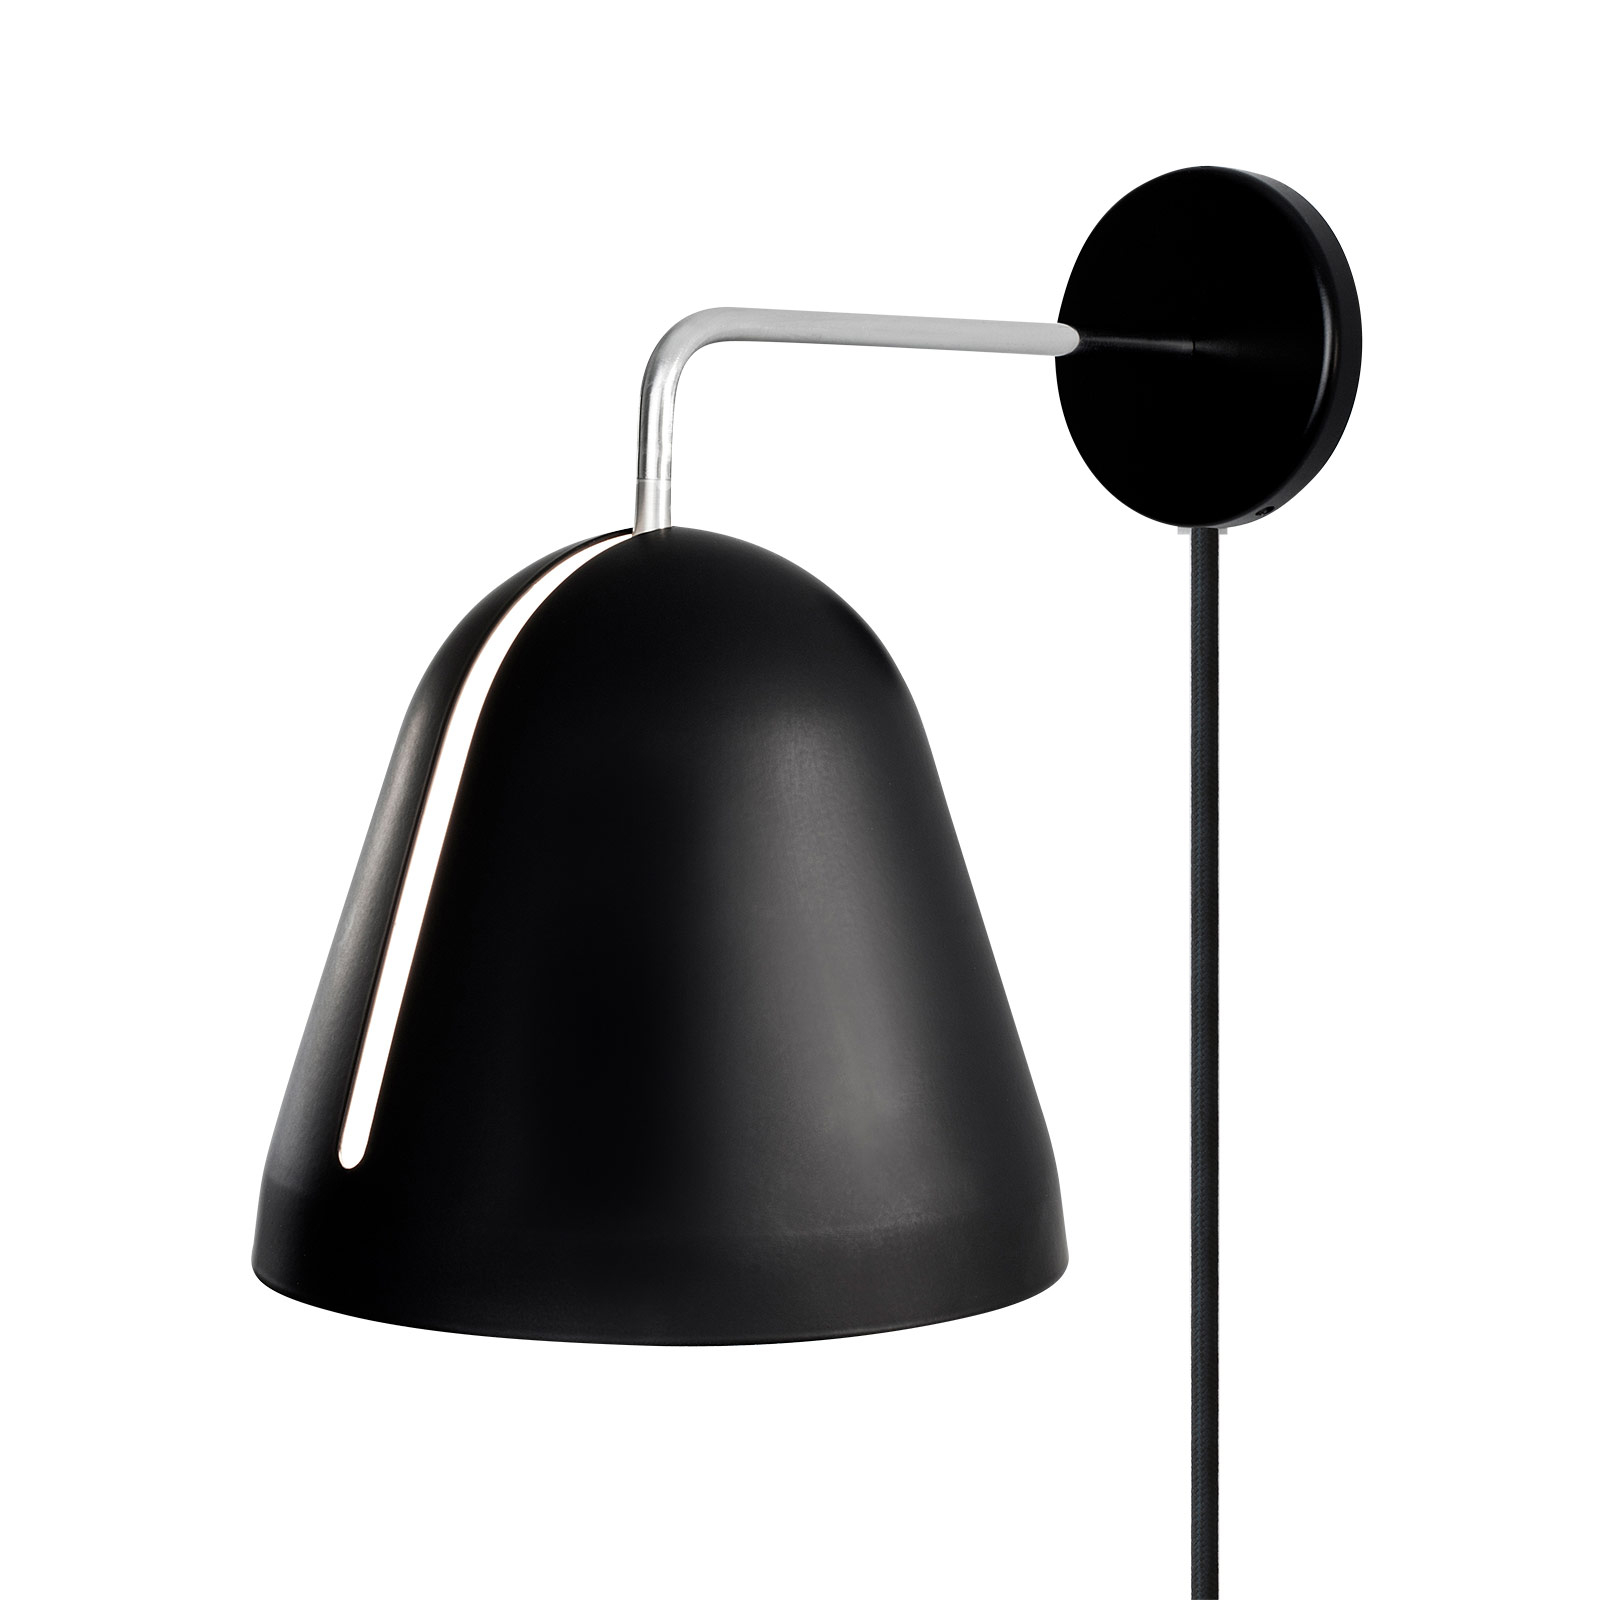 Nyta Tilt Wall wandlamp met stekker, zwart